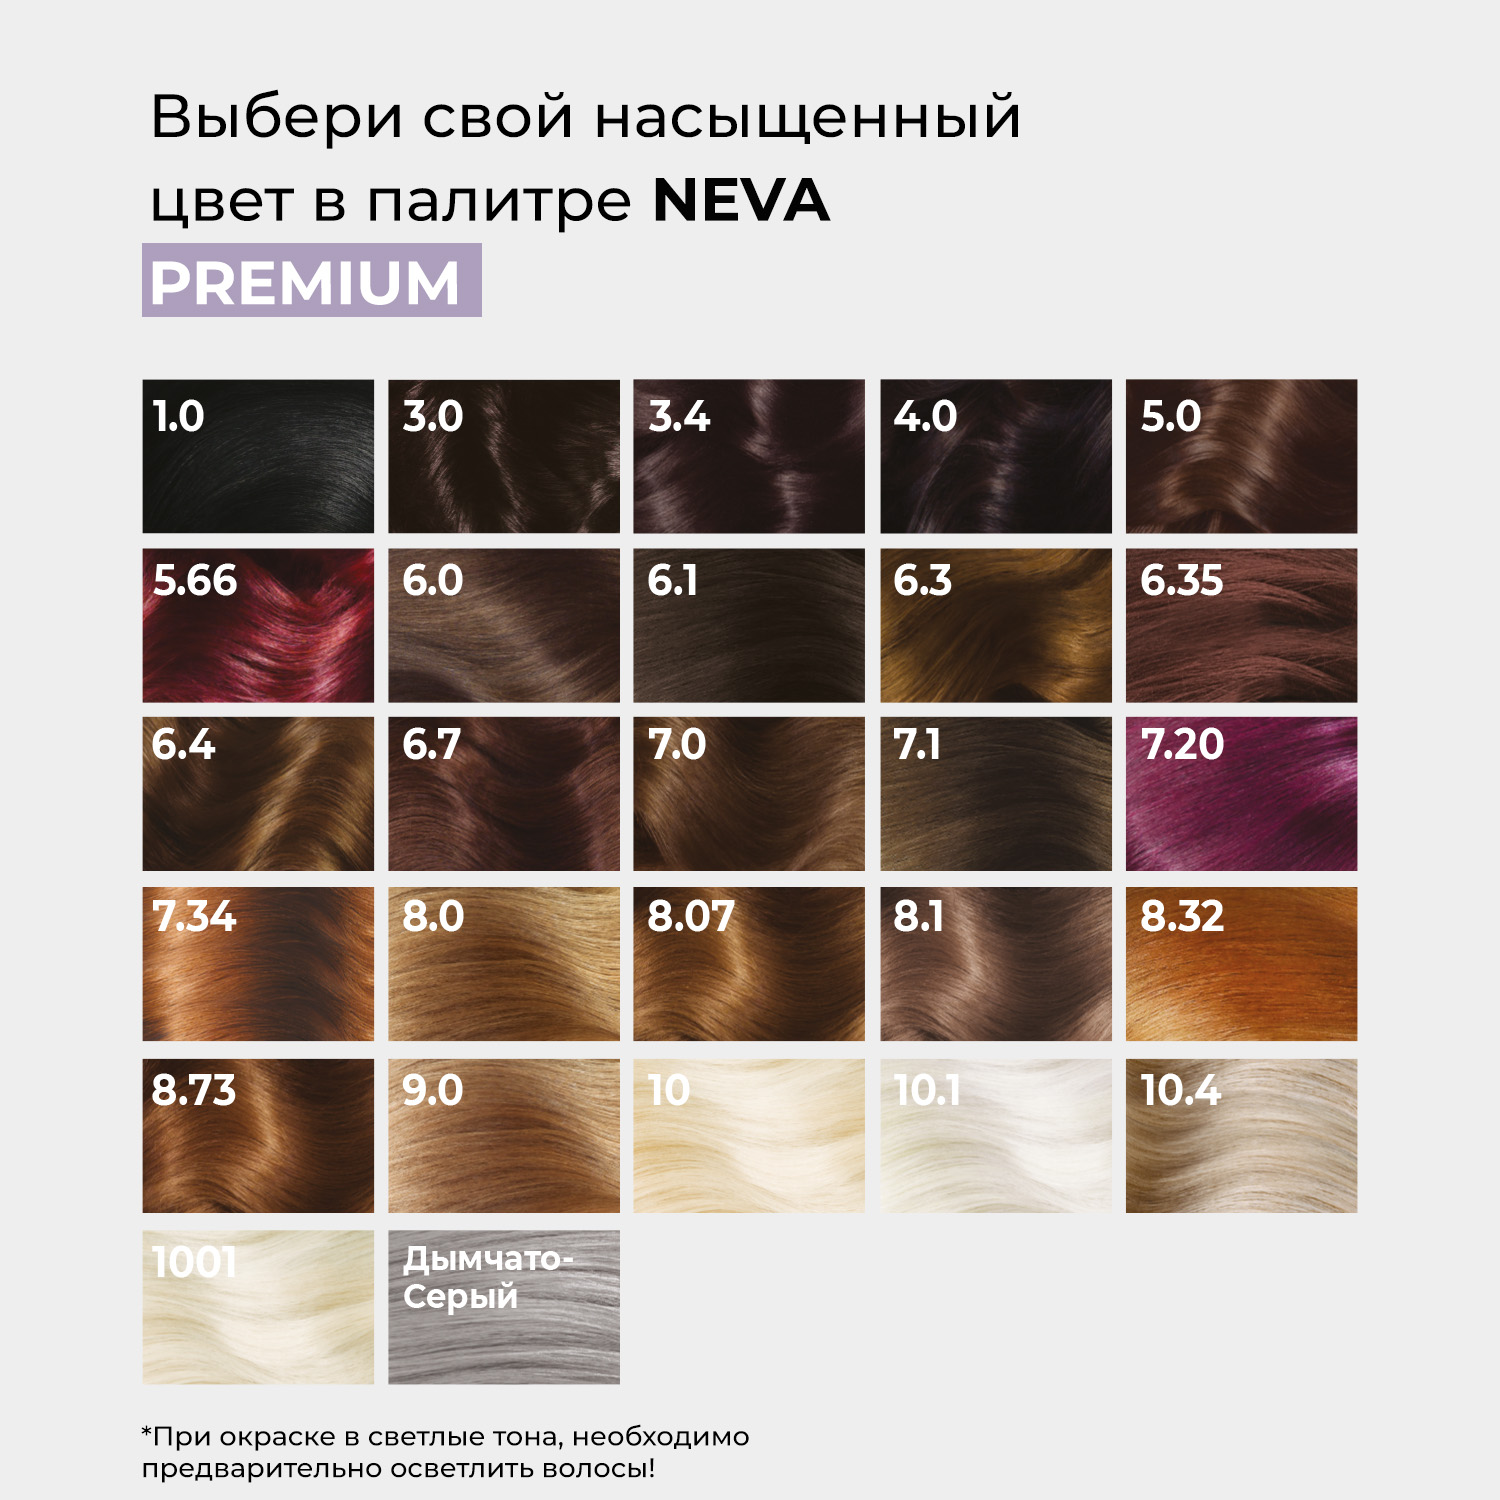 Крем-краска для волос Neva Premium стойкая 3.0 темный кофе – купить вМоскве, цены в интернет-магазинах на Мегамаркет